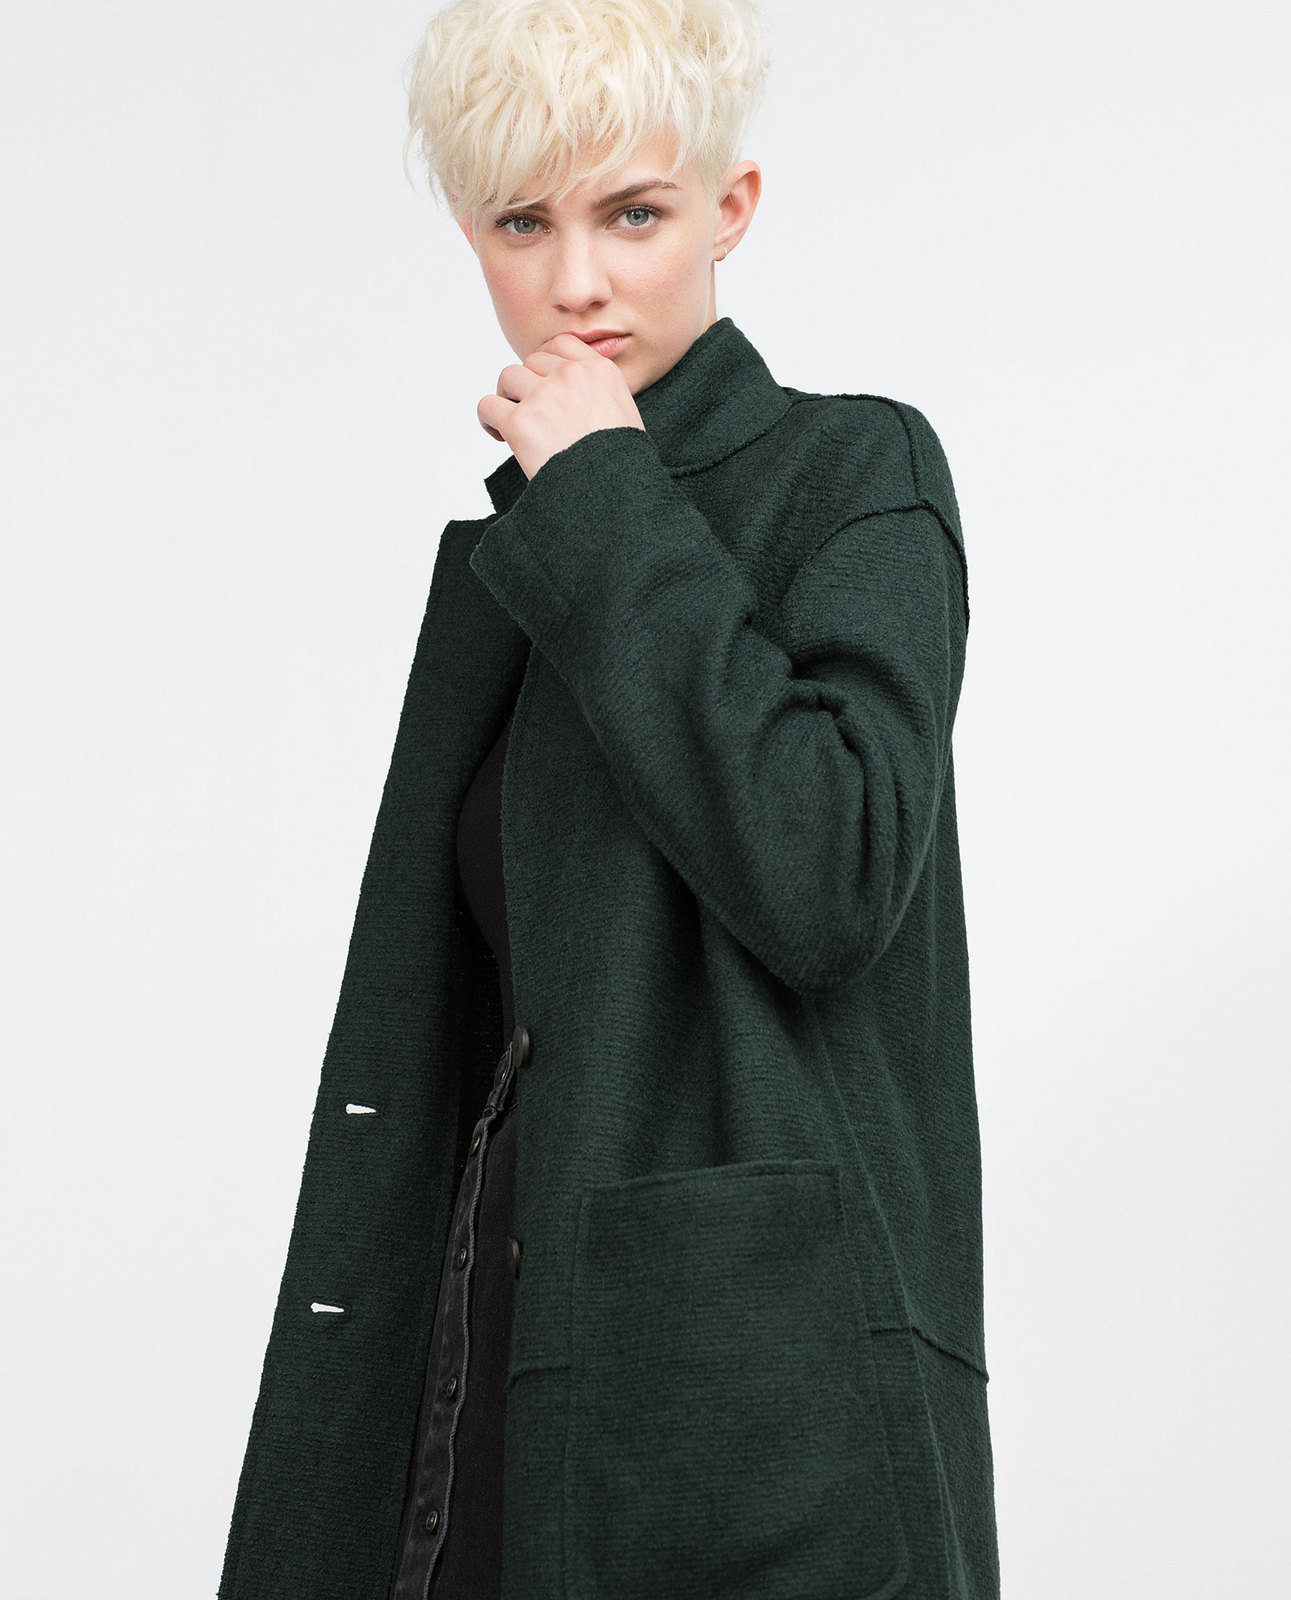 Zara zöld női gyapjú kabát 2015.10.15 fotója